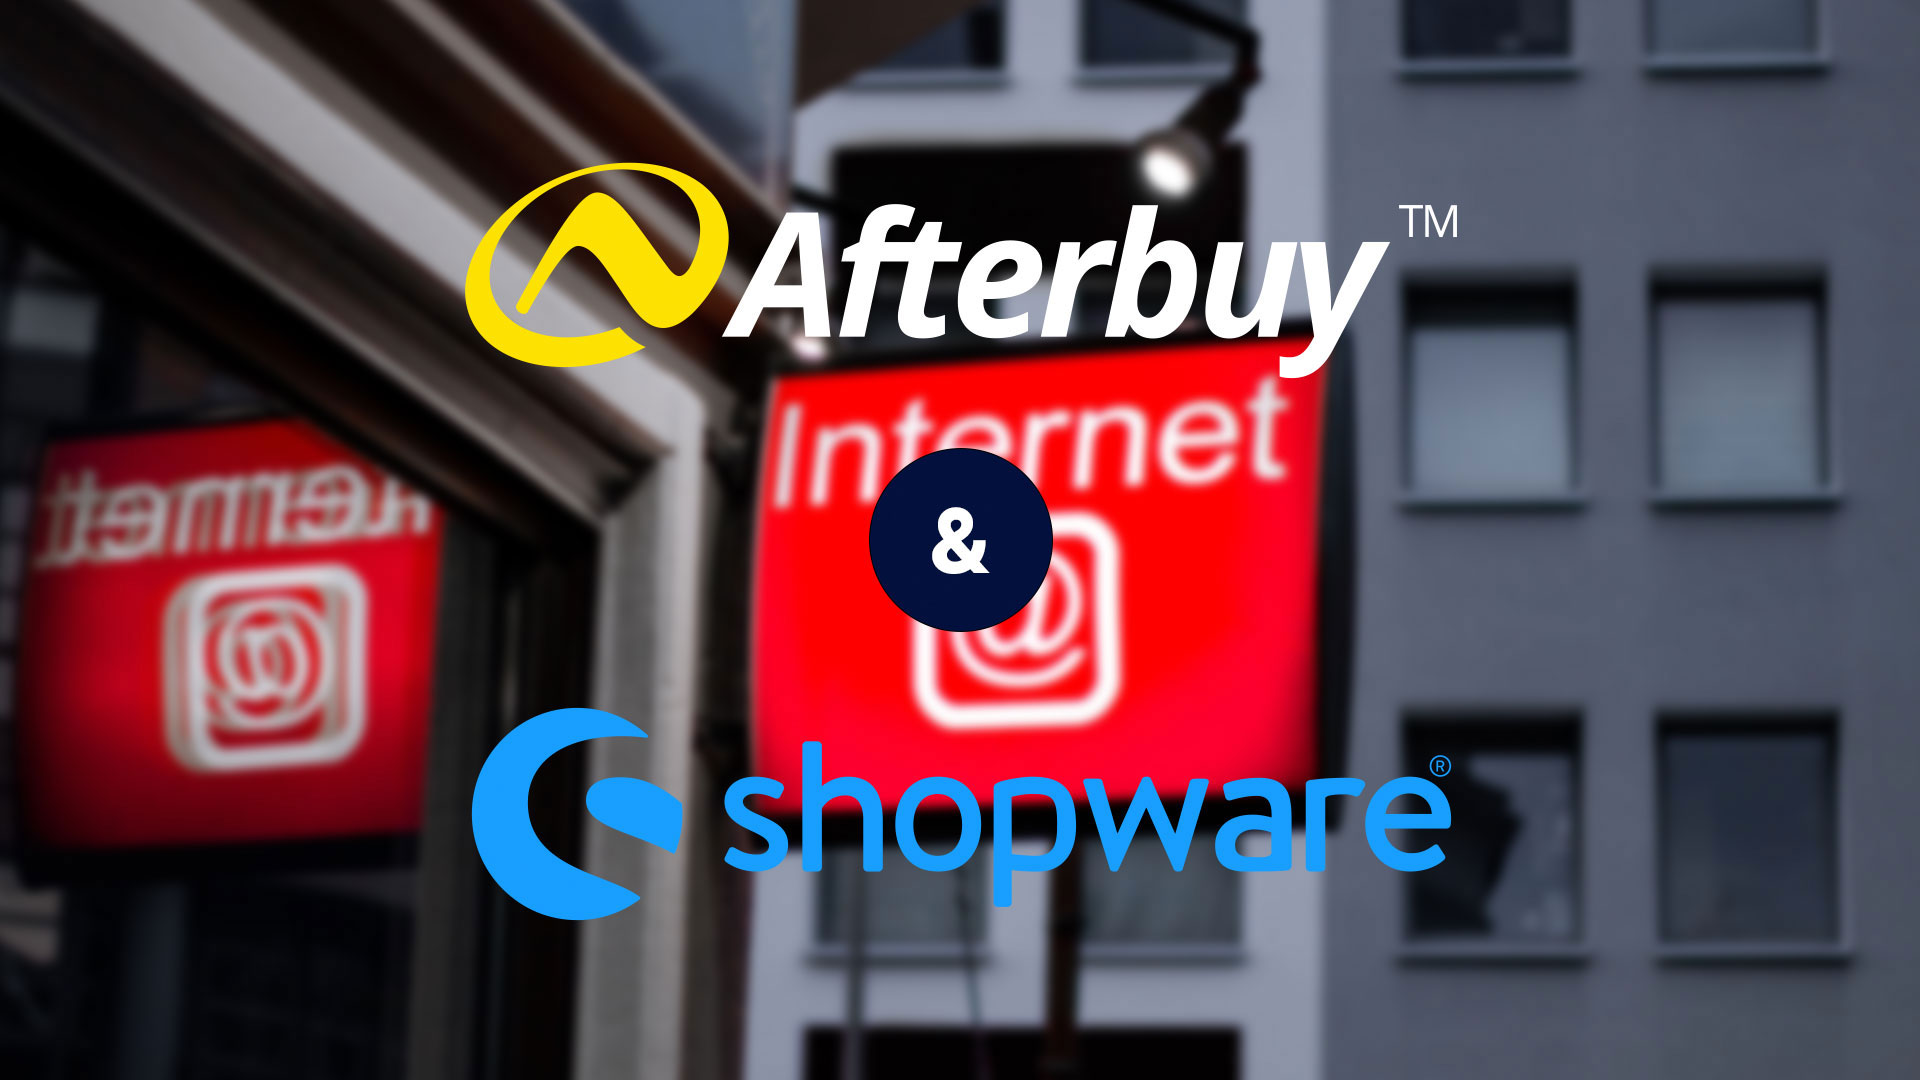 Afterbuy & Shopware 6 - was ist möglich? Im J&J Ideenschmiede Blog